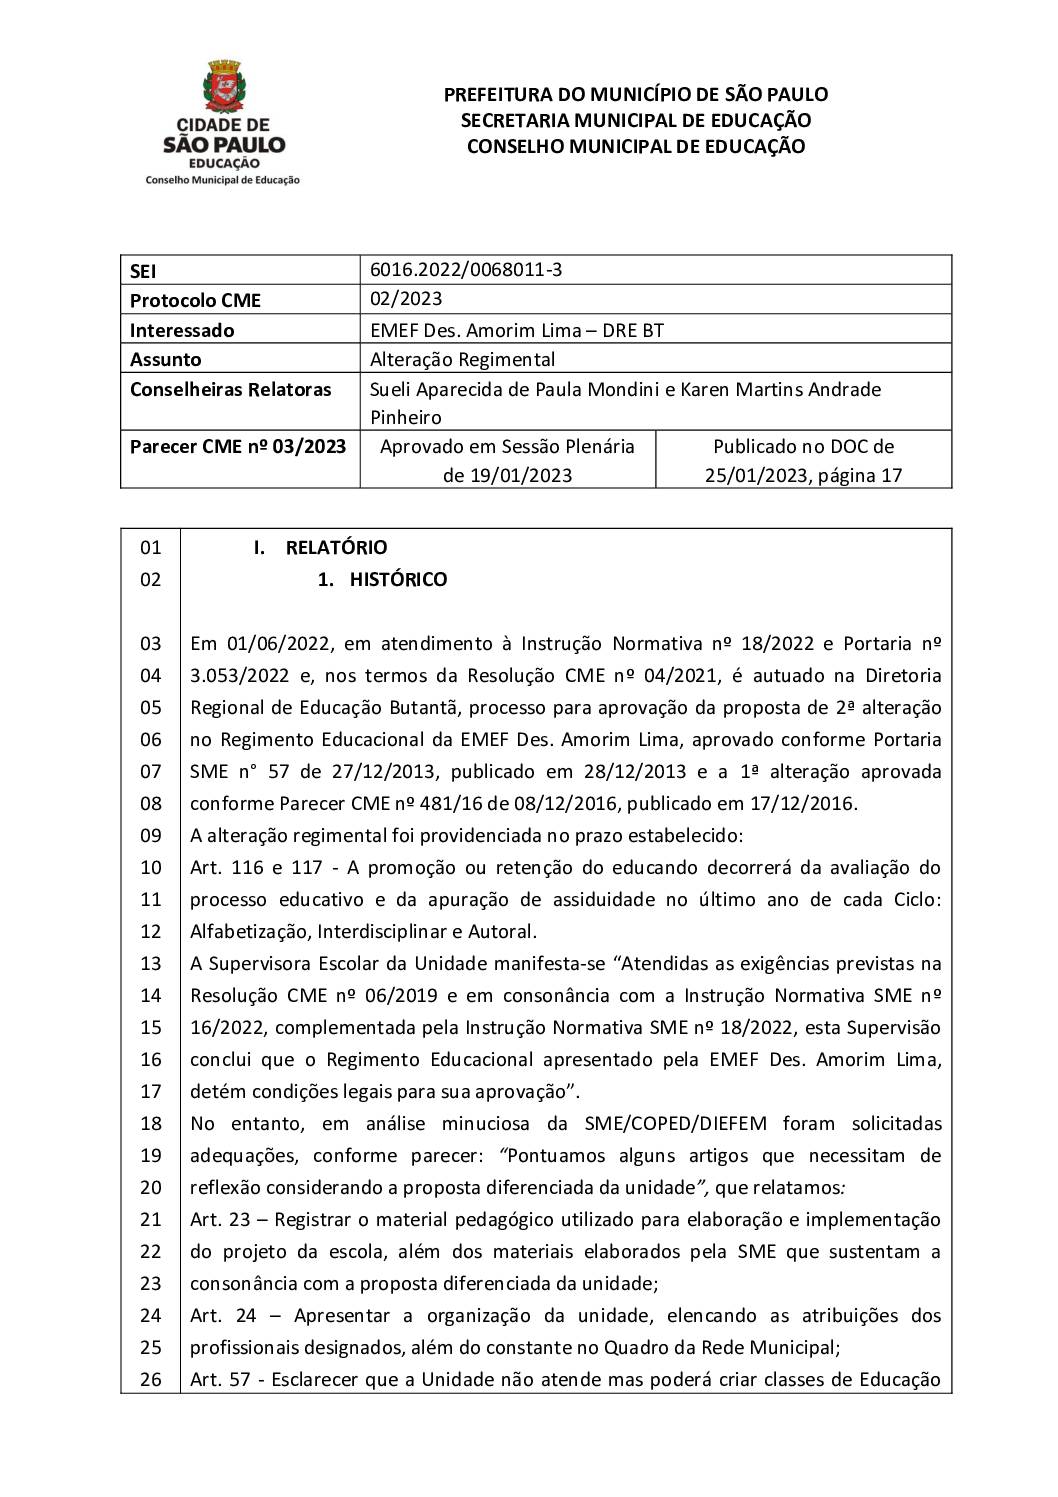 Parecer CME nº 03/2023 - EMEF Desembargador Amorim Lima (DRE BT) - Alteração Regimental